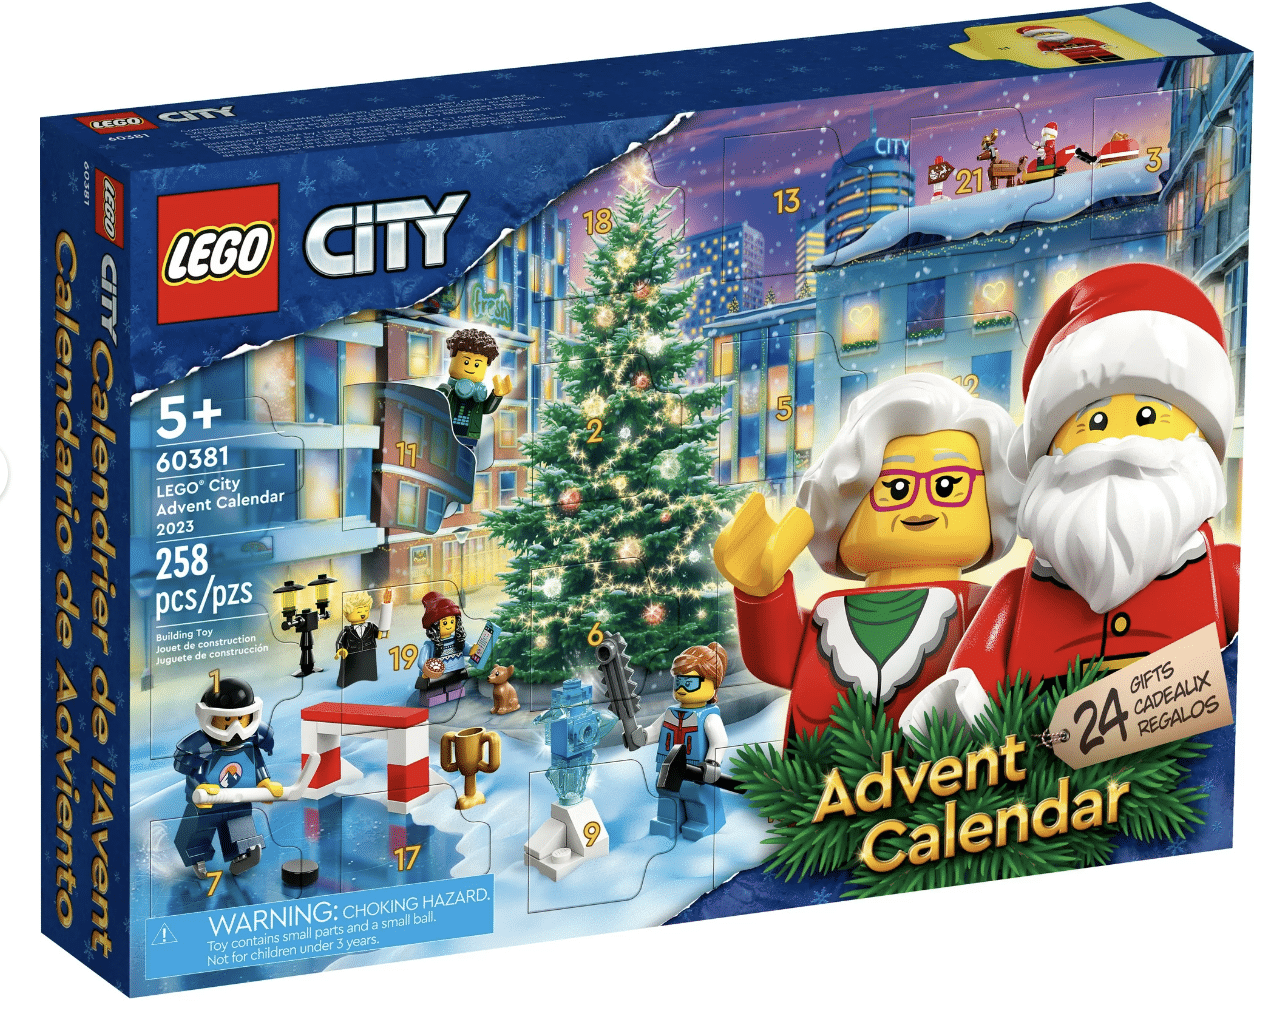 Lego City advent calendar. 